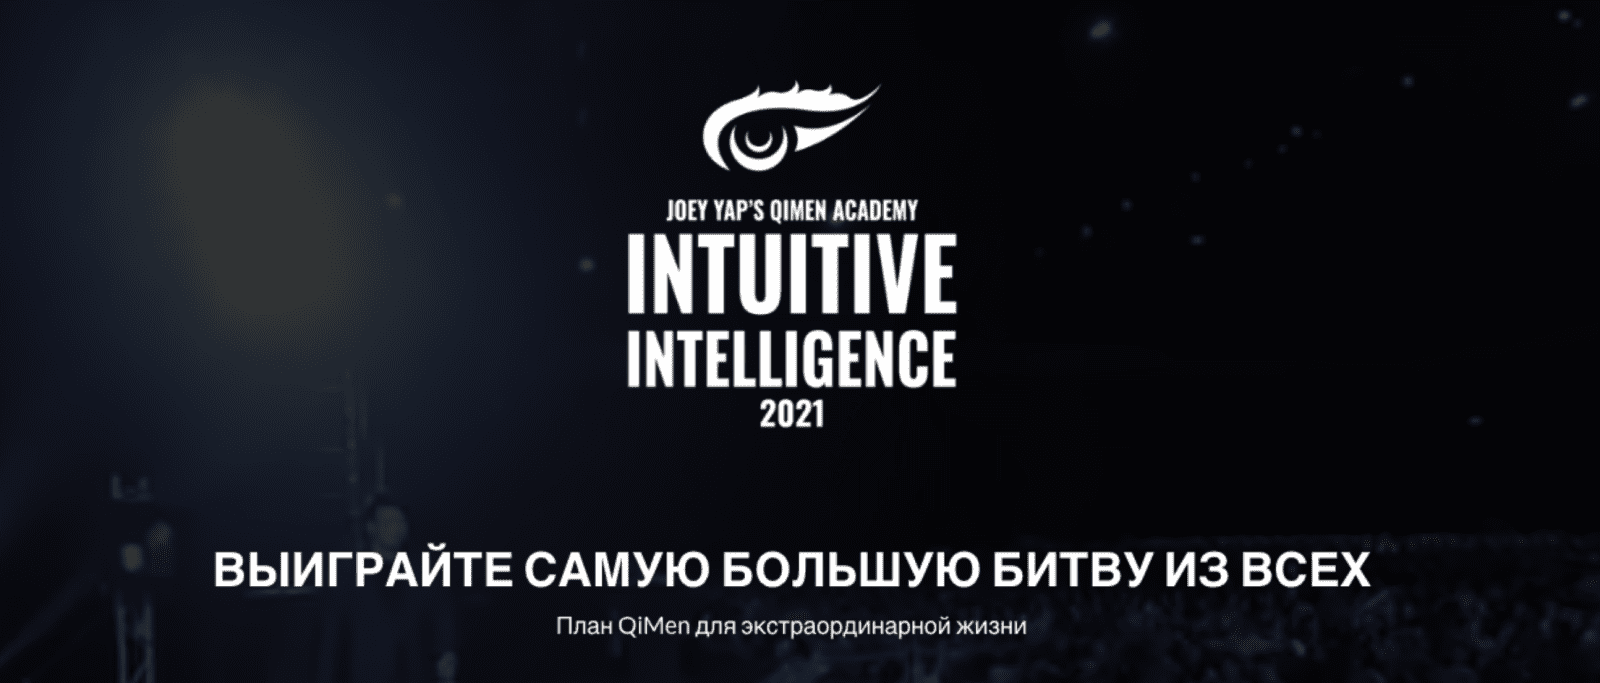 Изображение [Joey Yap] Интуитивный Интеллект: план Ци Мэнь для экстраординарной жизни (2022) в посте 278152